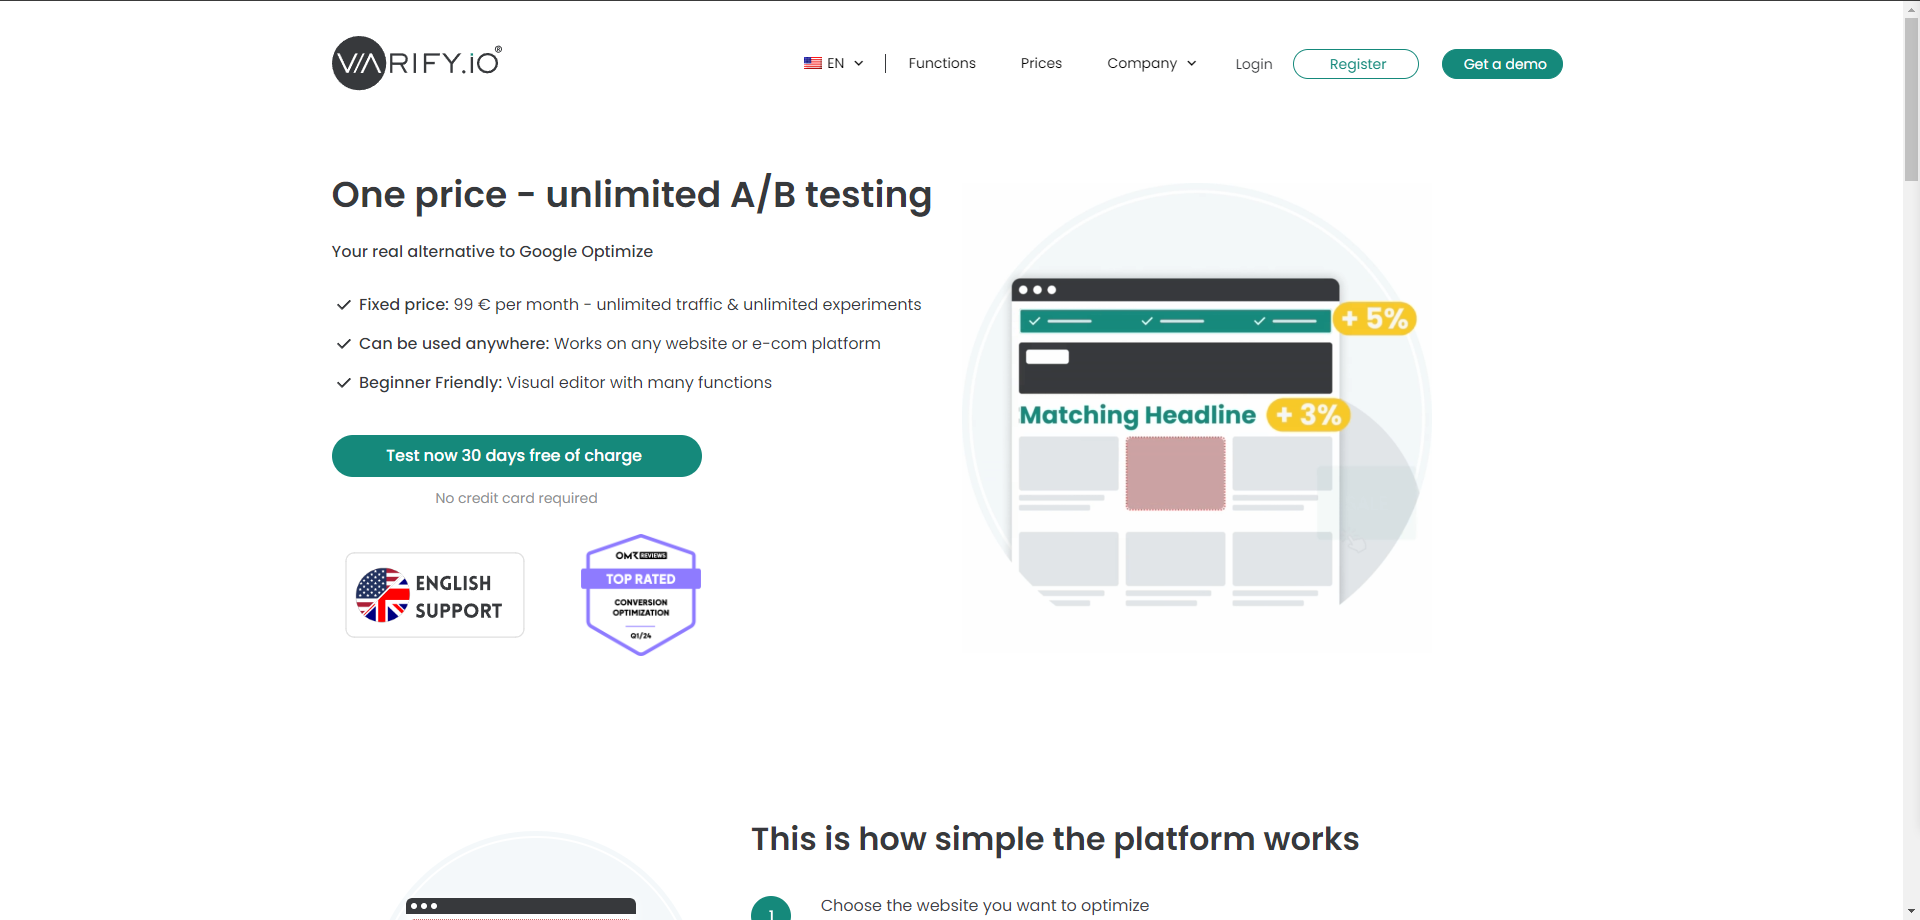 Varify.io - A/B Testing Platform